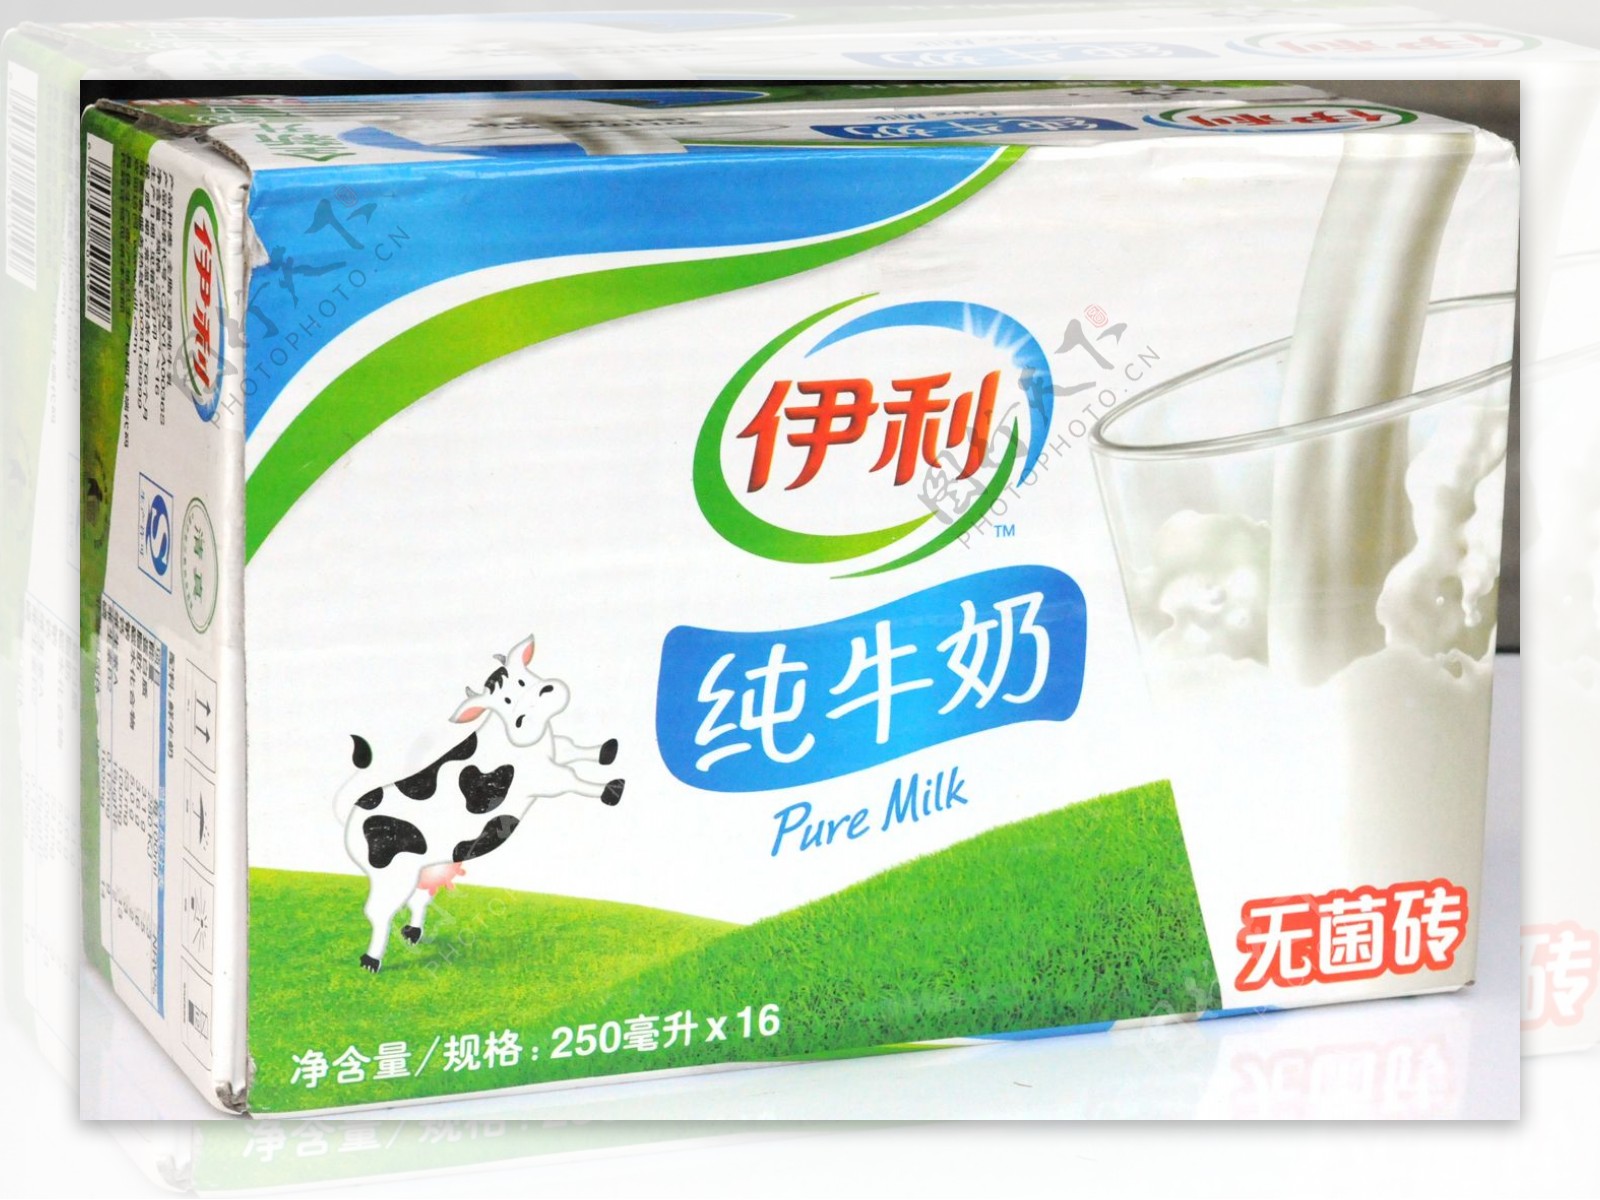 伊利专业乳品 东方灵感淡奶油 | Foodaily每日食品